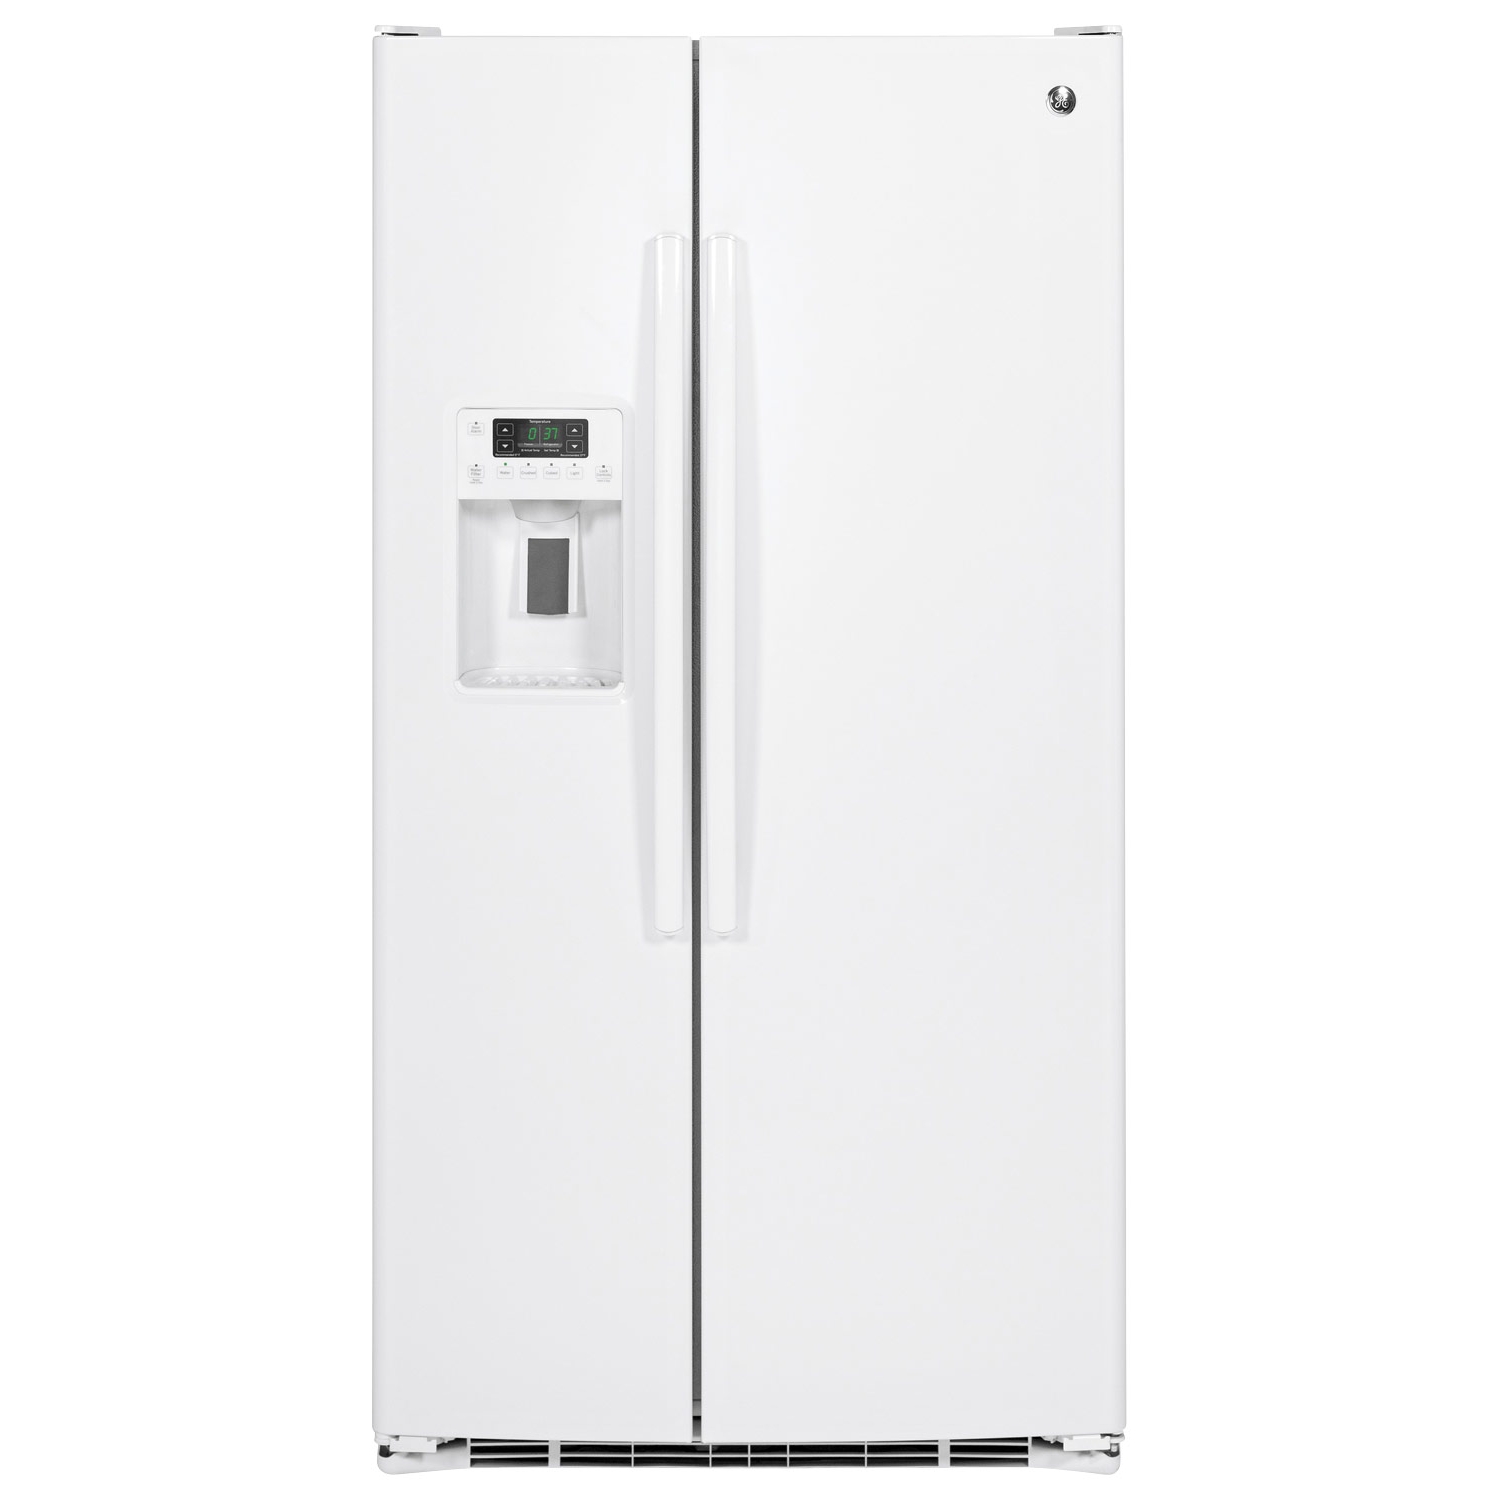 Comprar GE Refrigerador GSE25GGHWW